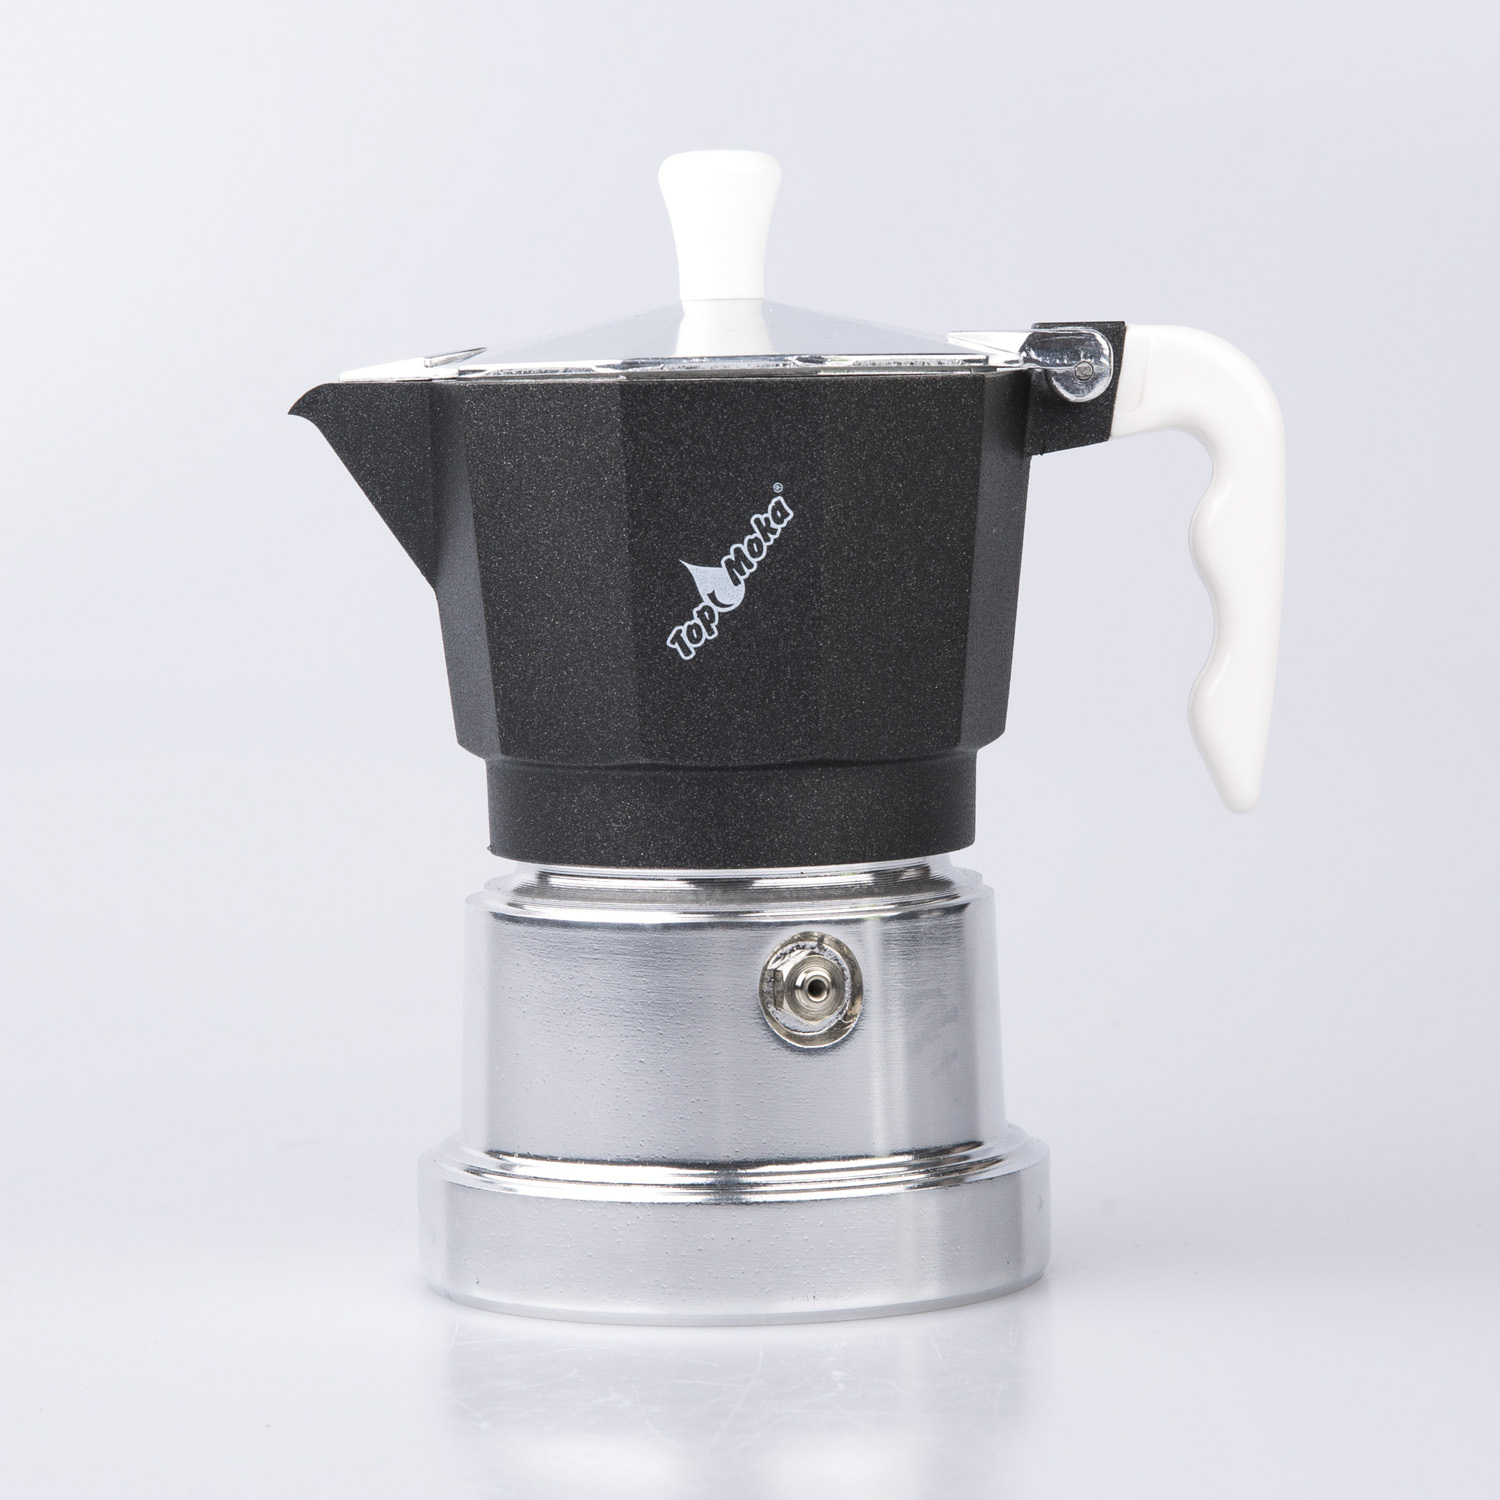 意大利原产Top Moka家用摩卡壶咖啡壶银色底座3杯版 黑色